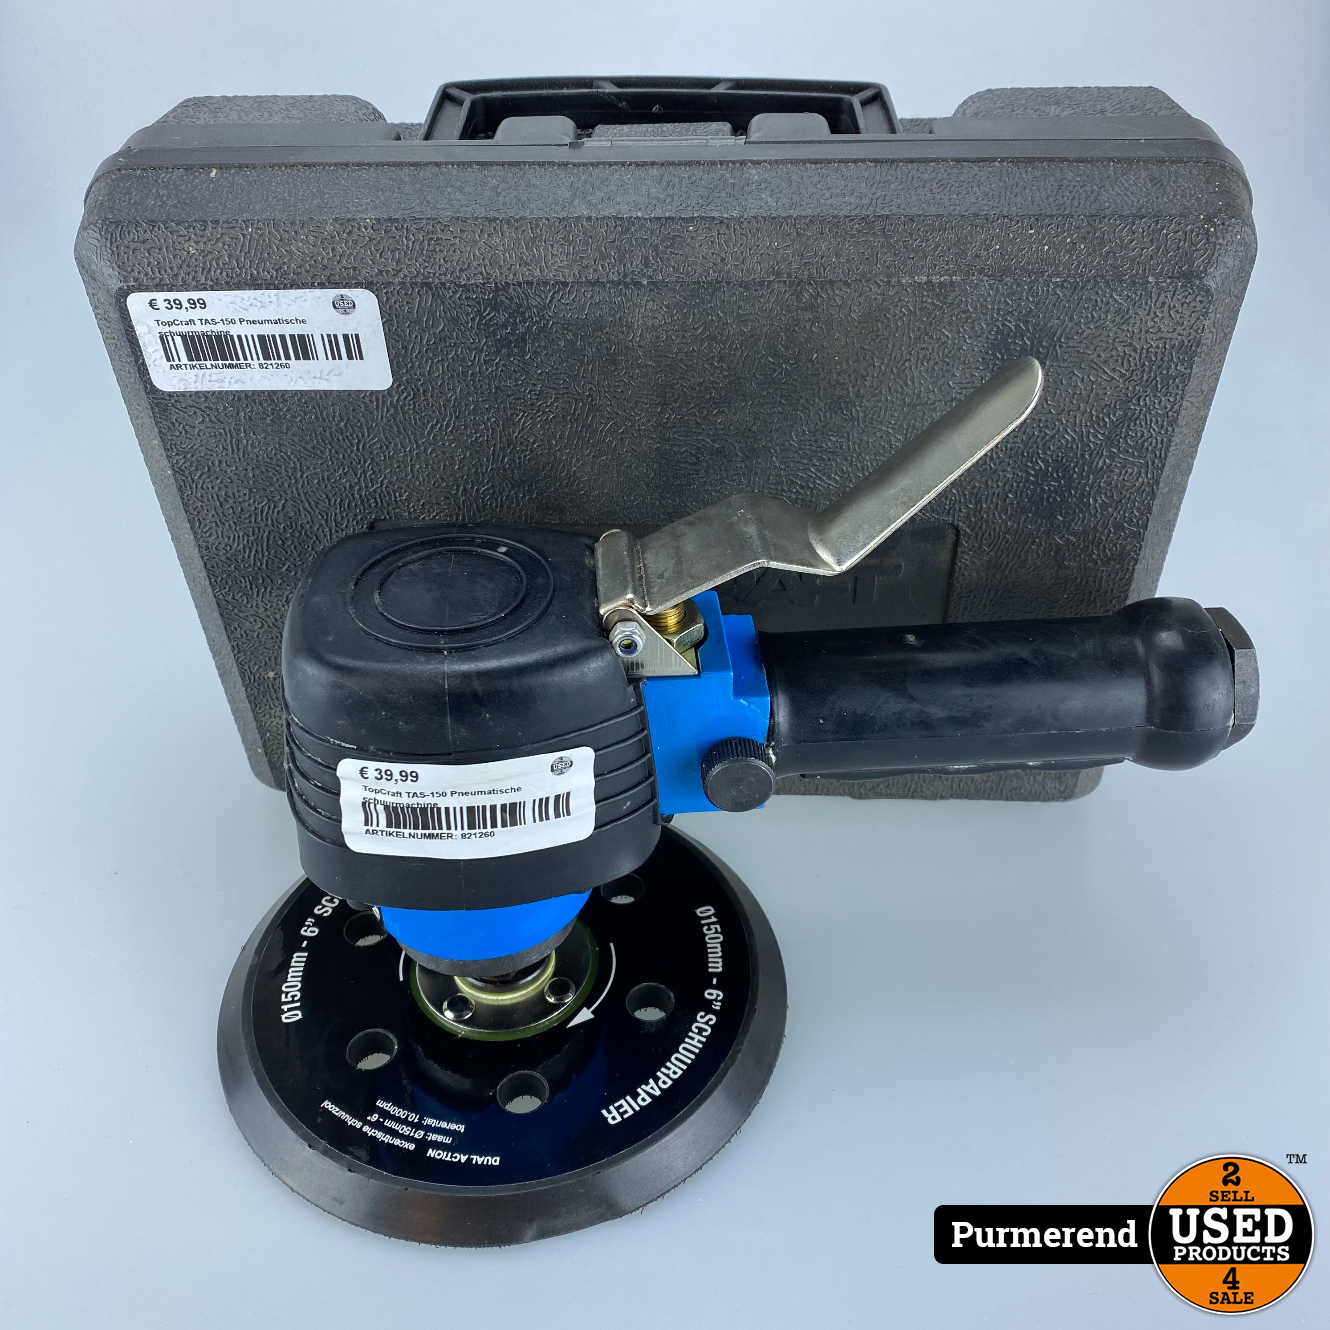 terugtrekken hardware Mondwater TopCraft TAS-150 Pneumatische schuurmachine - Used Products Purmerend